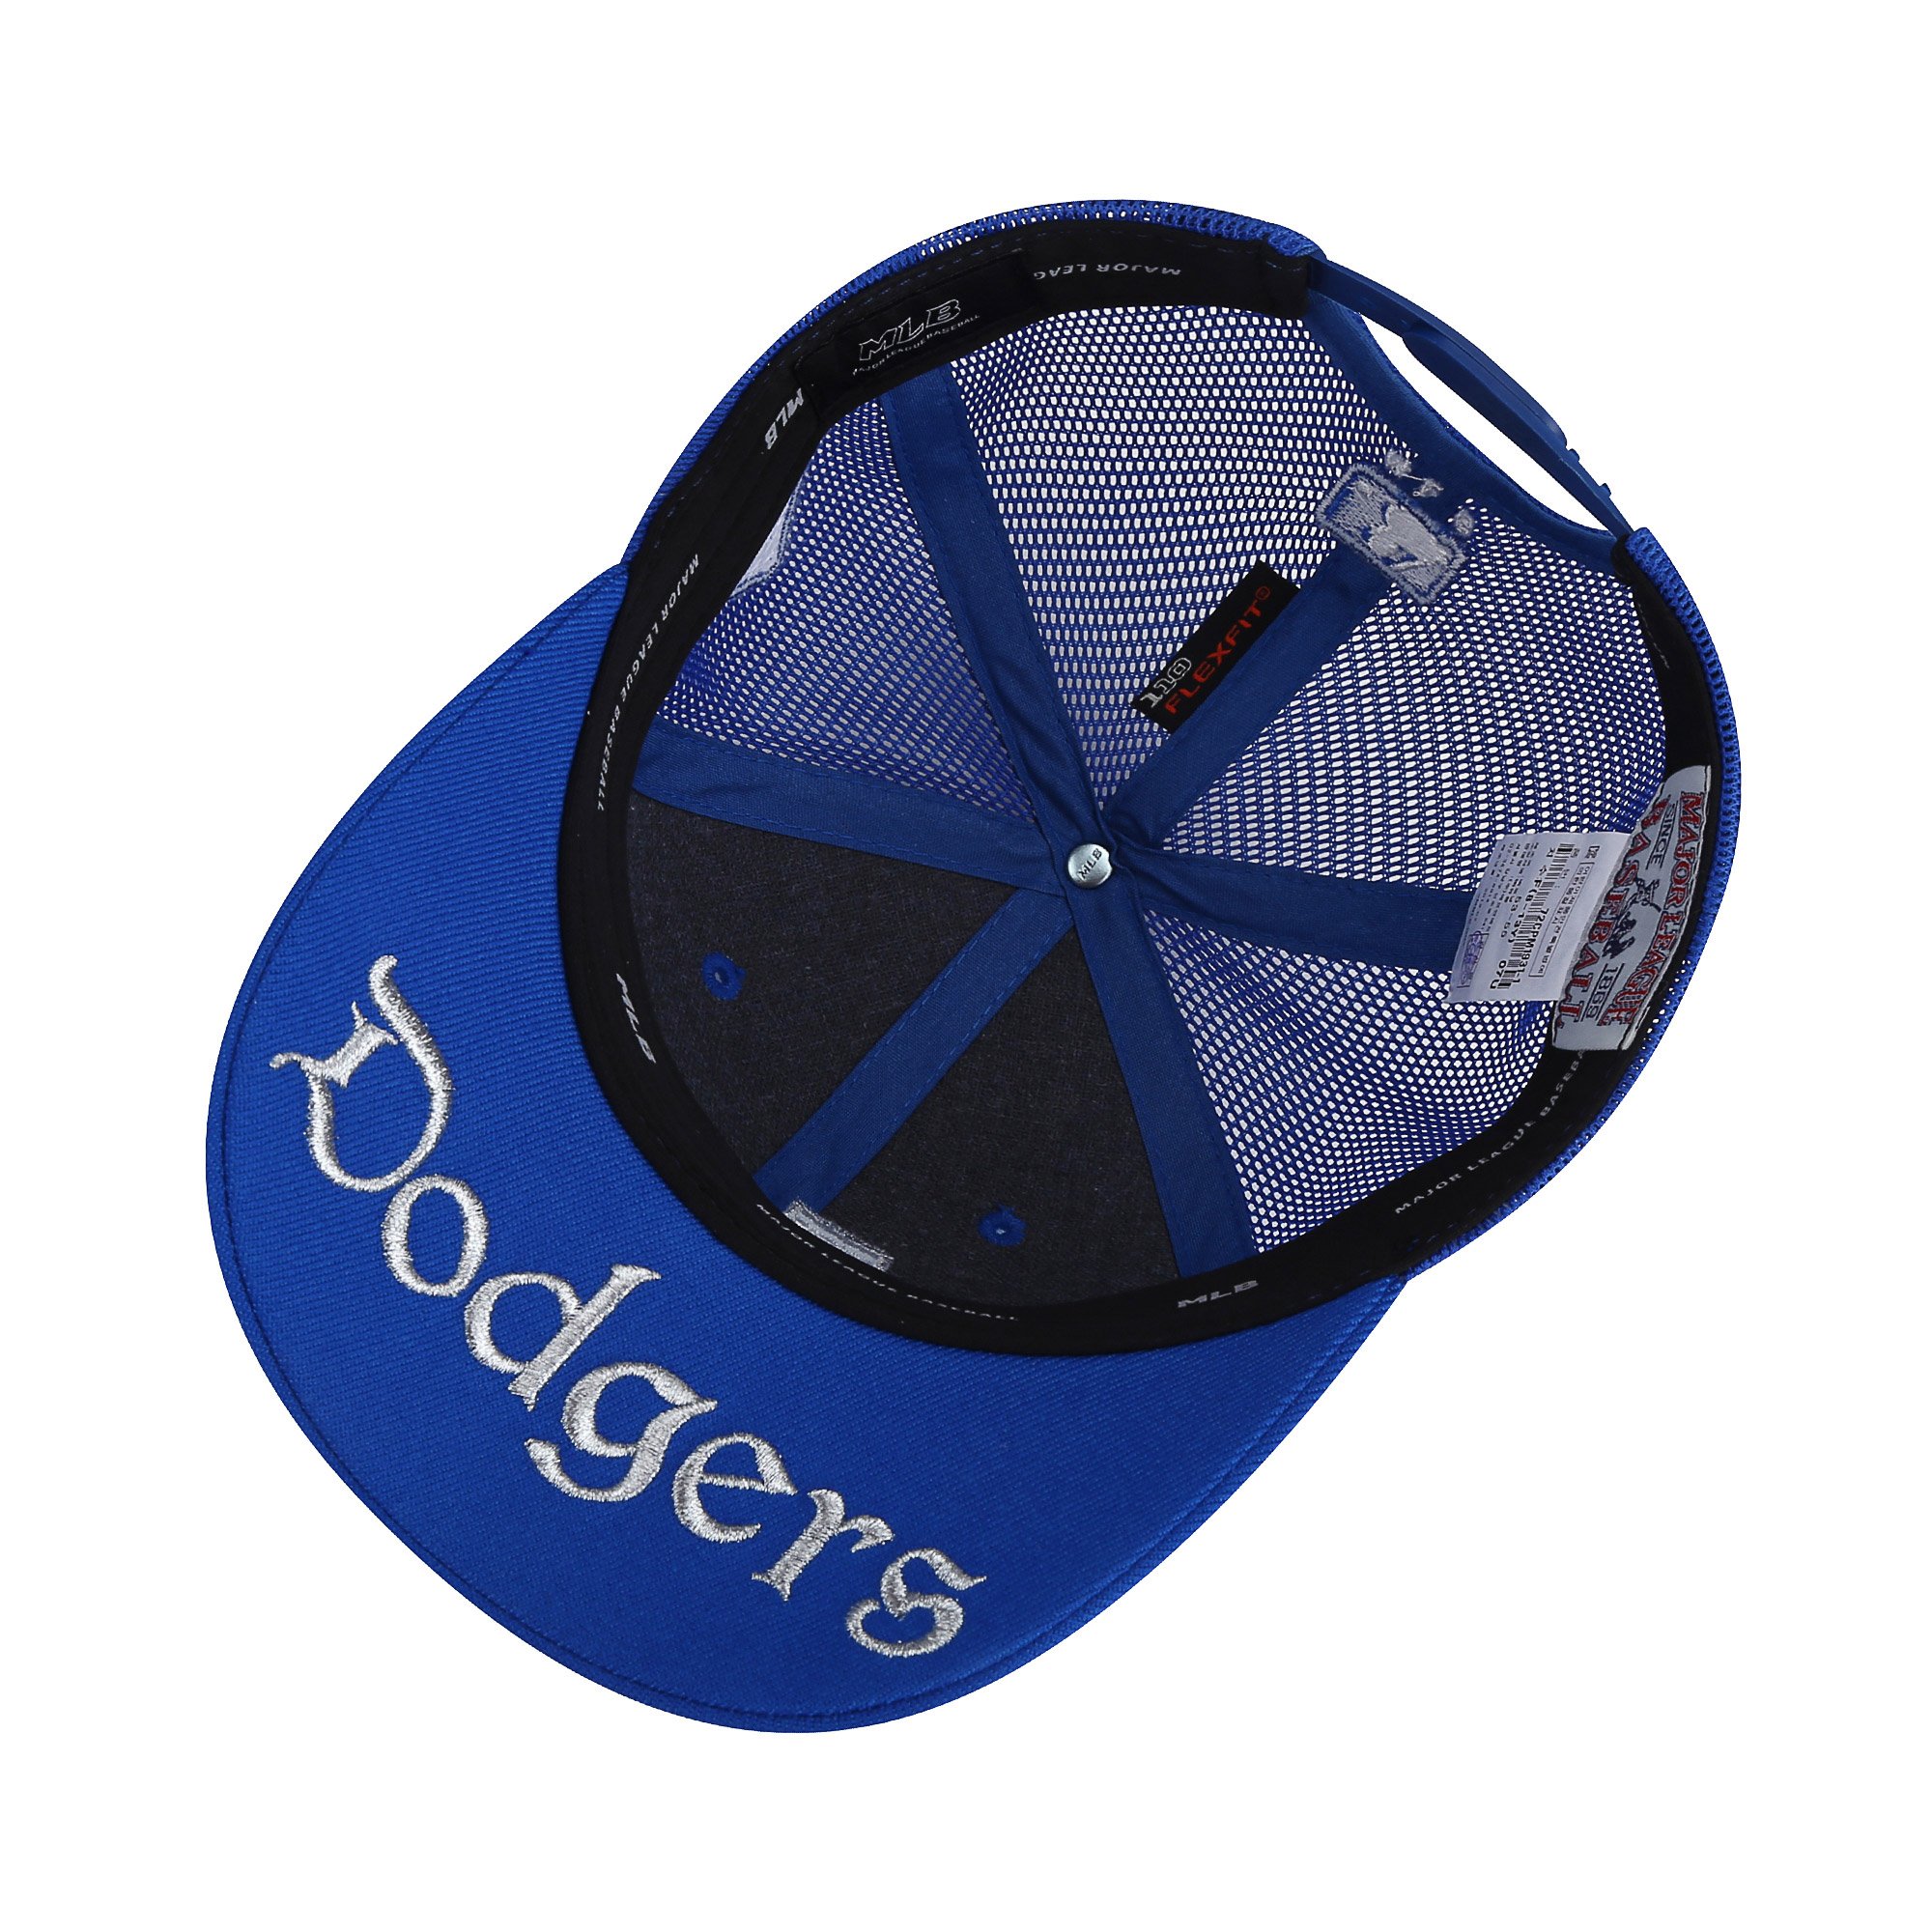 la dodgers basic 网眼棒球帽